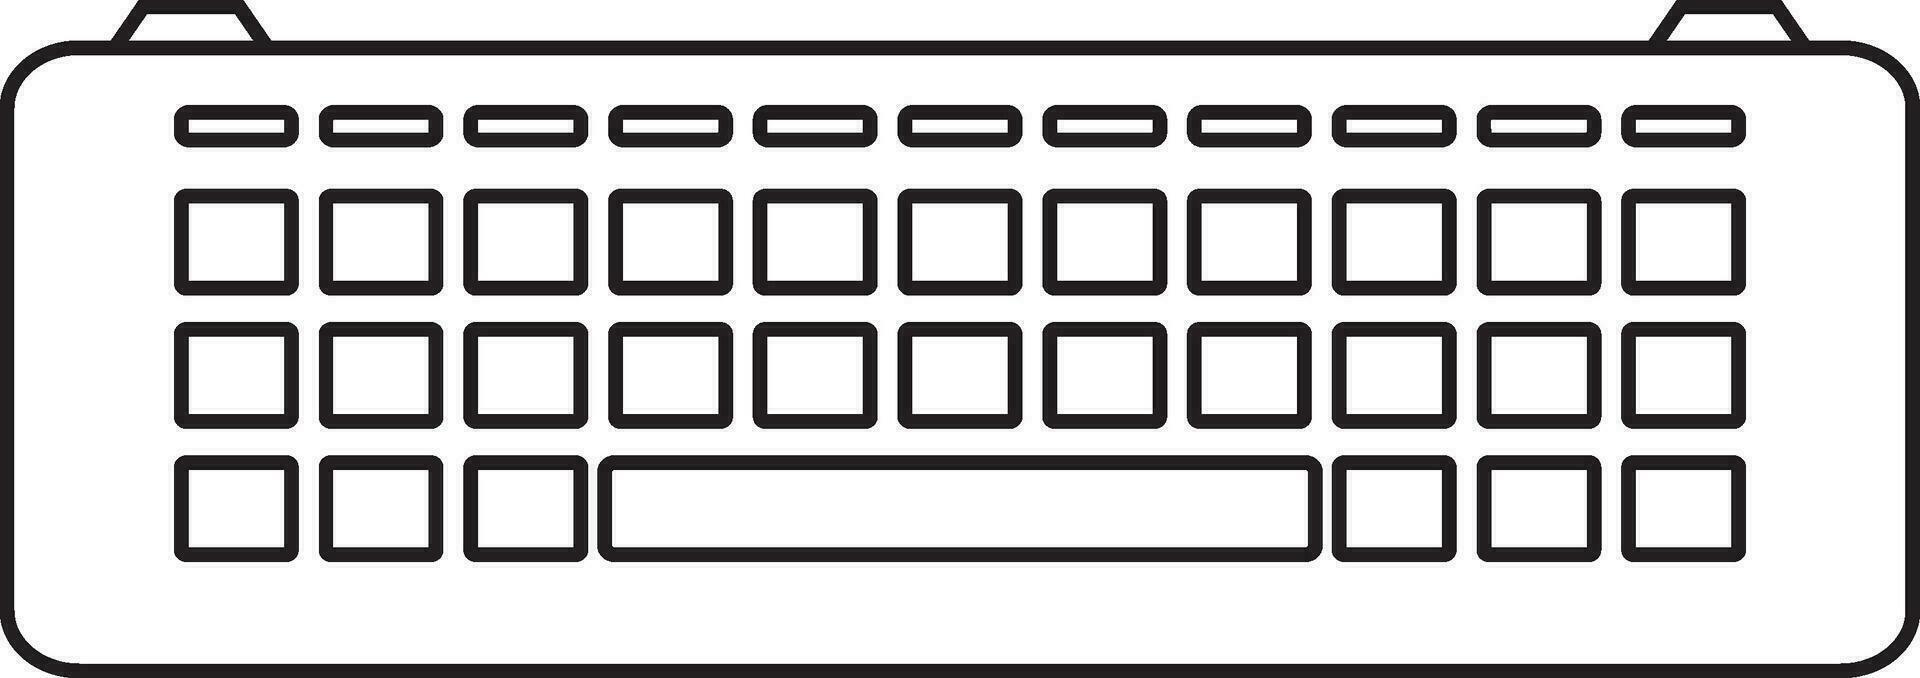 noir ligne art clavier dans plat style. vecteur